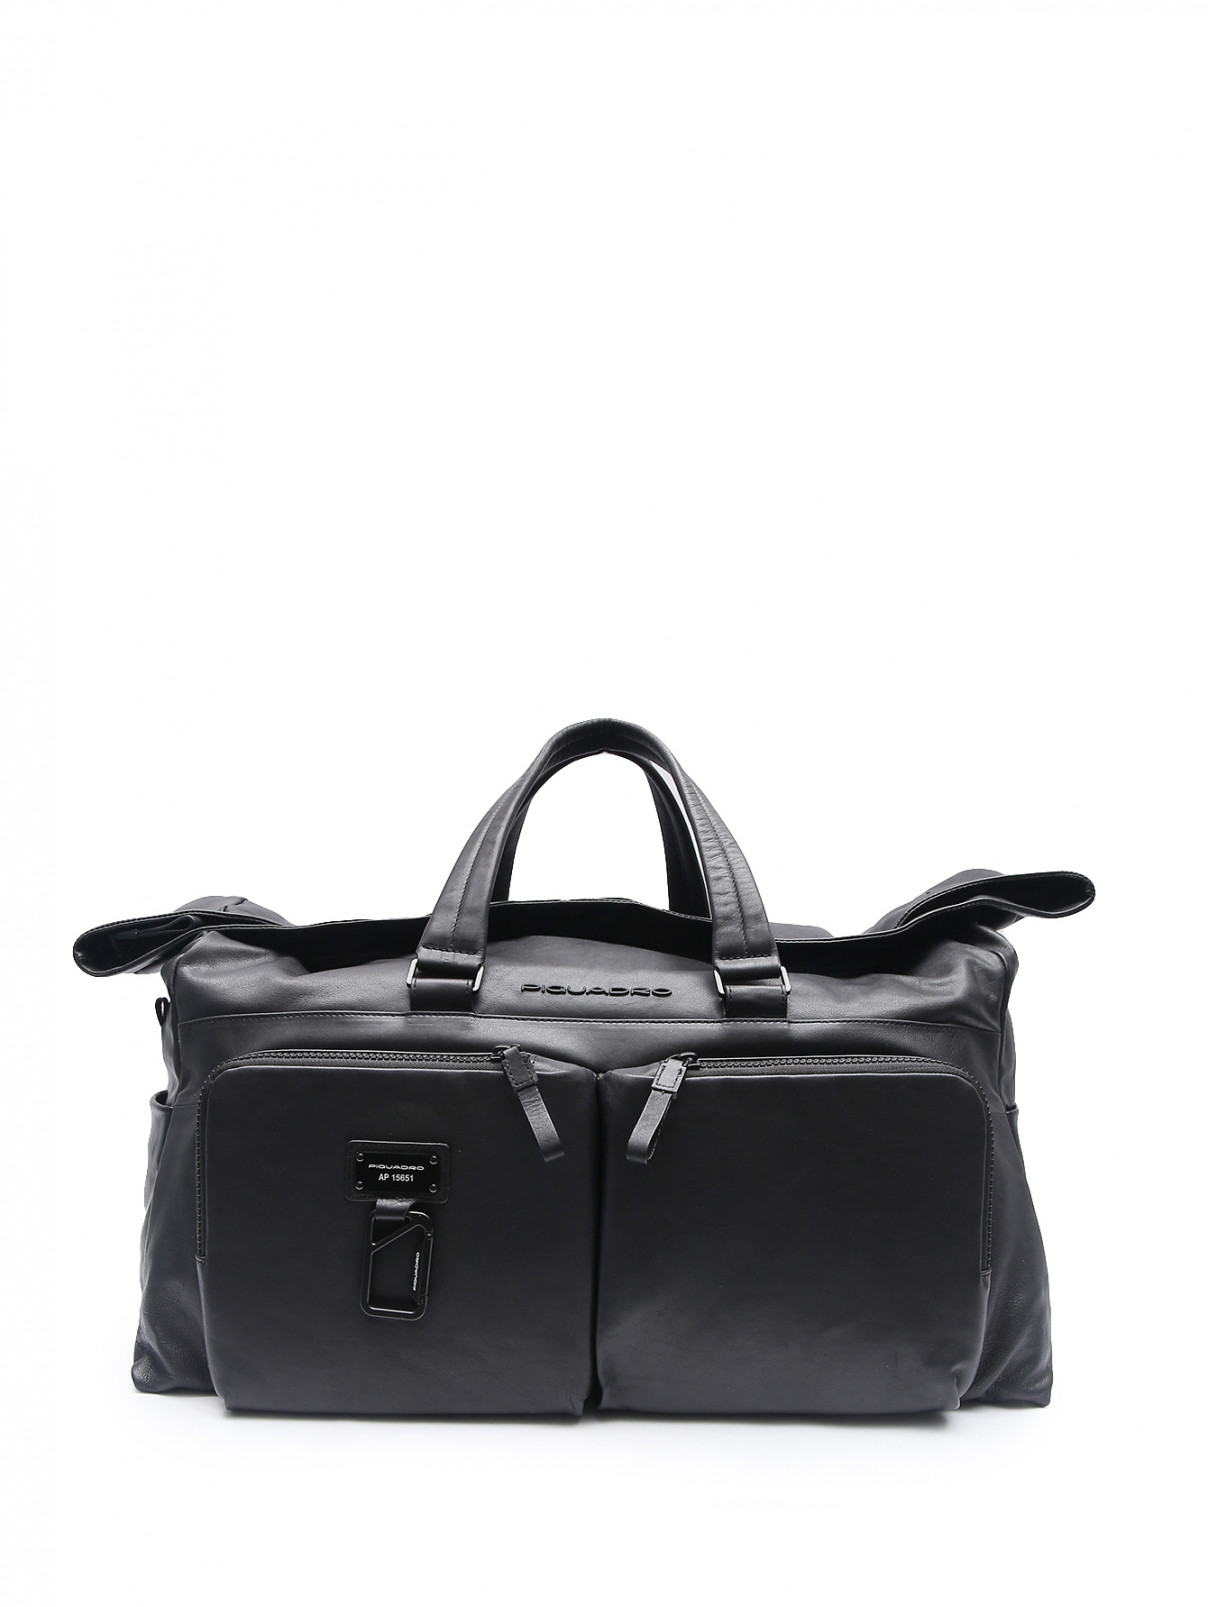 Дорожная сумка из кожи с карманами Piquadro  –  Общий вид  – Цвет:  Черный